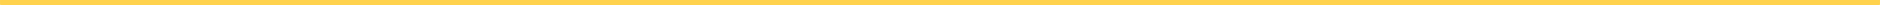 Linea color amarillo